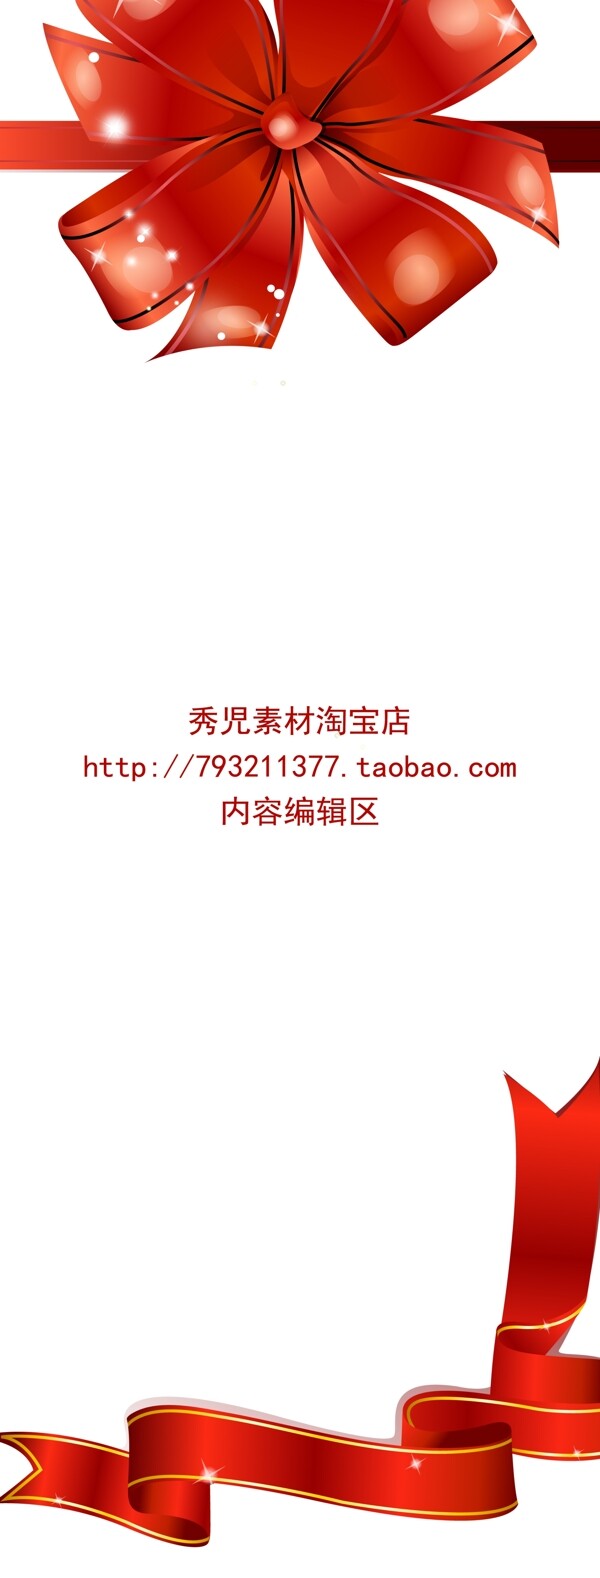 红色中国结展架设计模板素材海报画面